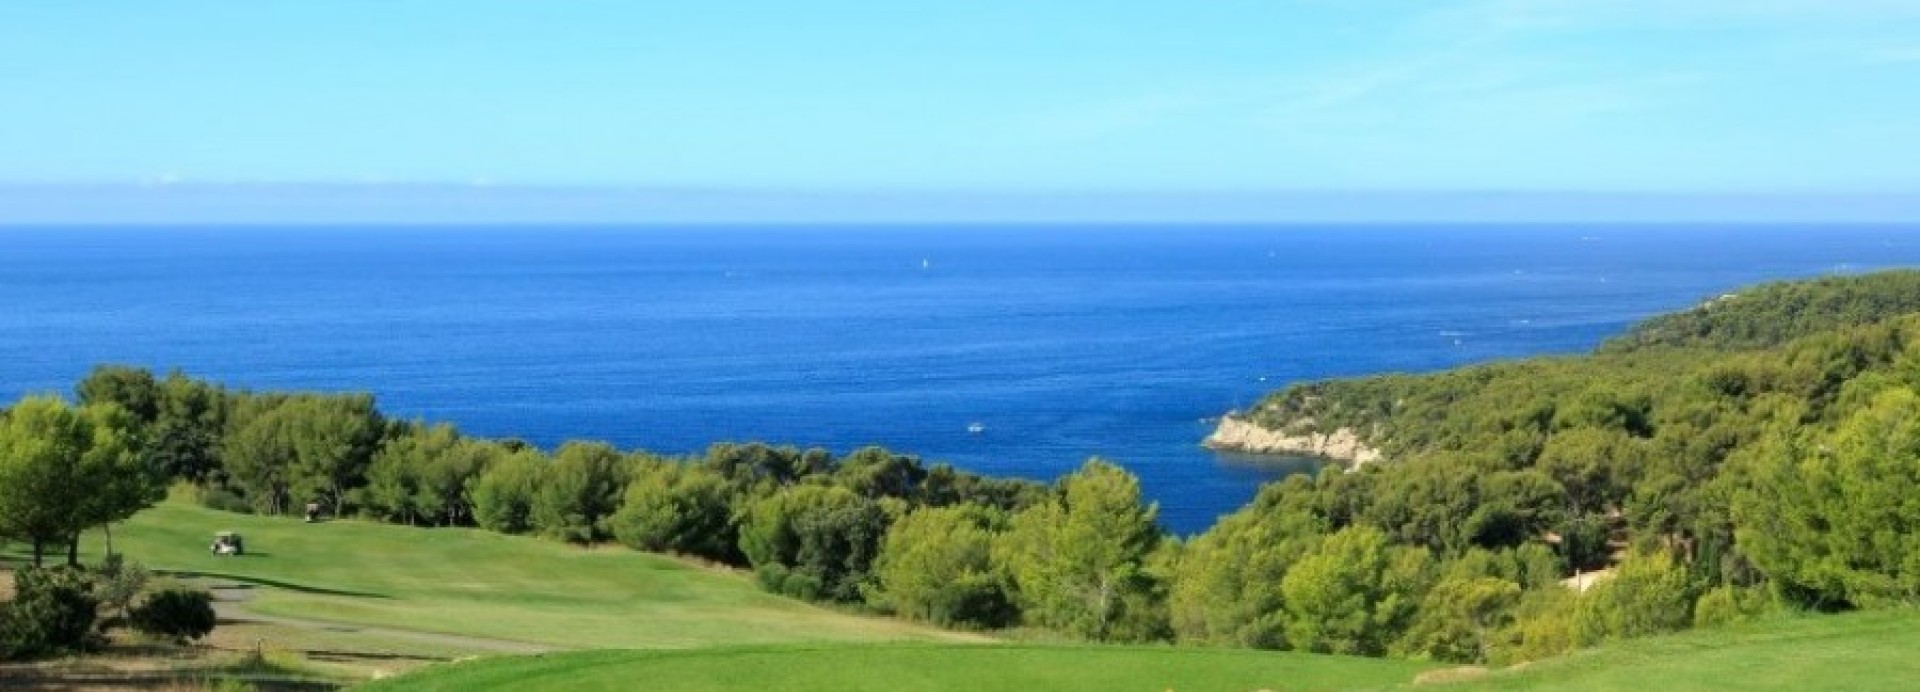 DOLCE FREGATE GOLF CLUB  | Golfové zájezdy, golfová dovolená, luxusní golf